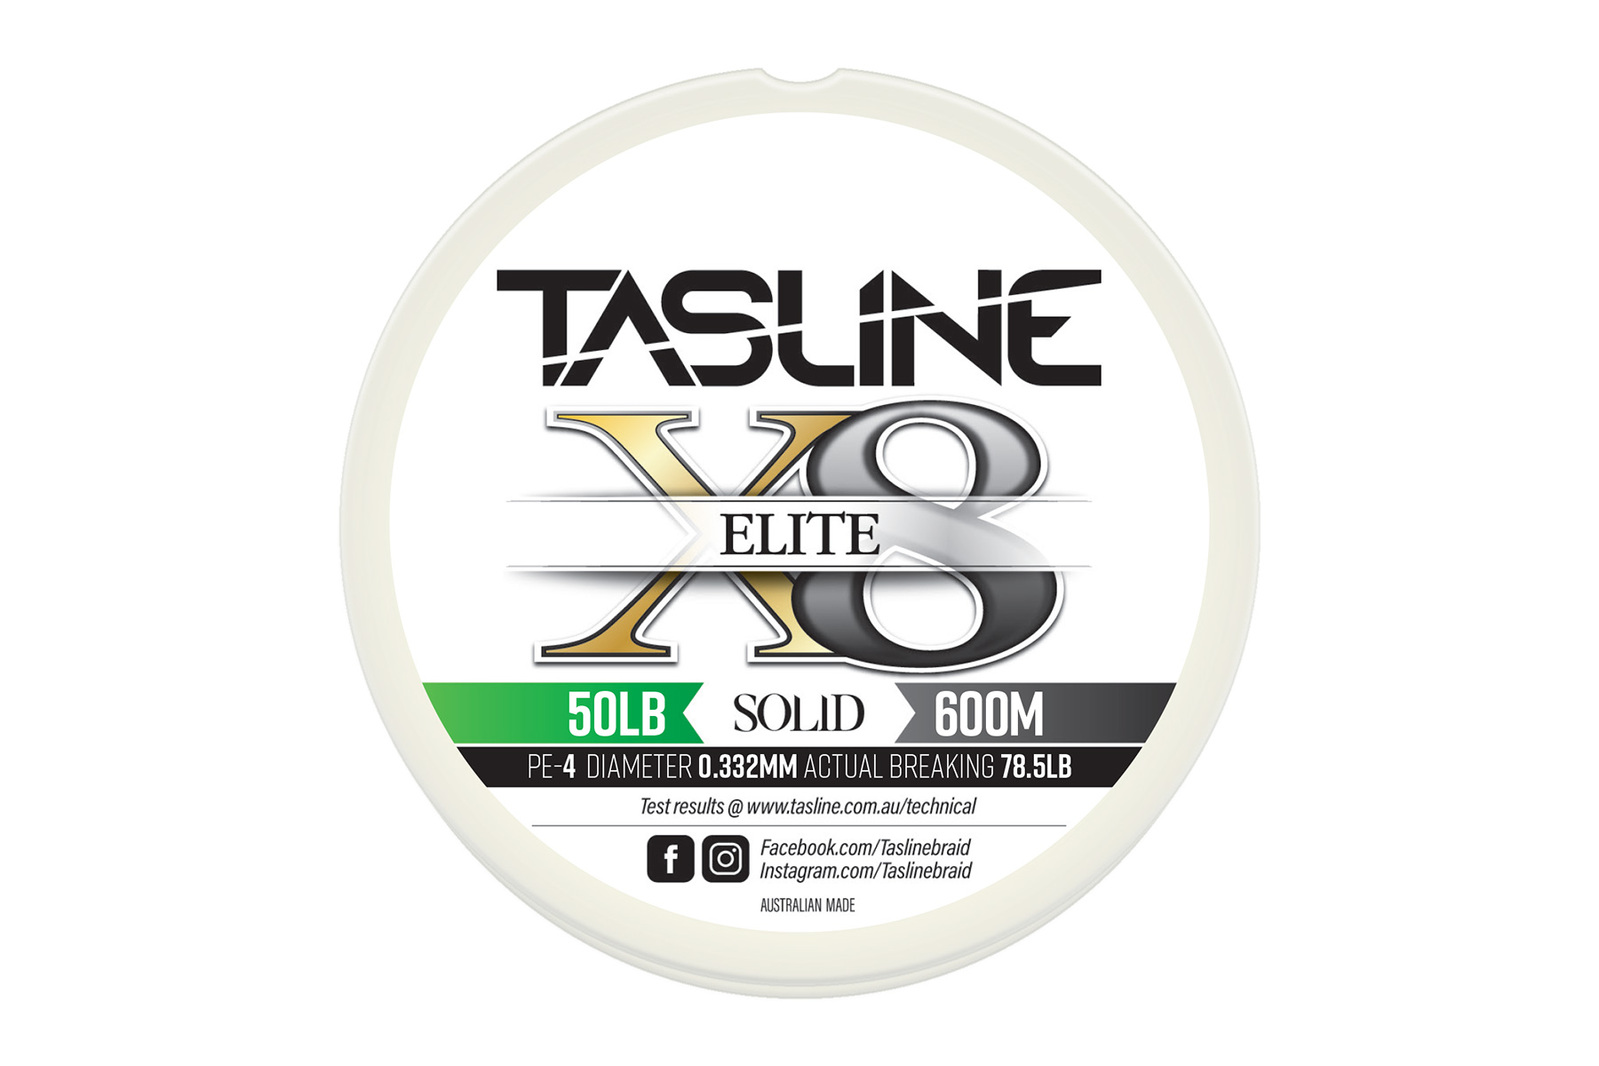 Tasline Elite White 600m Braid Fishing Line #50lb